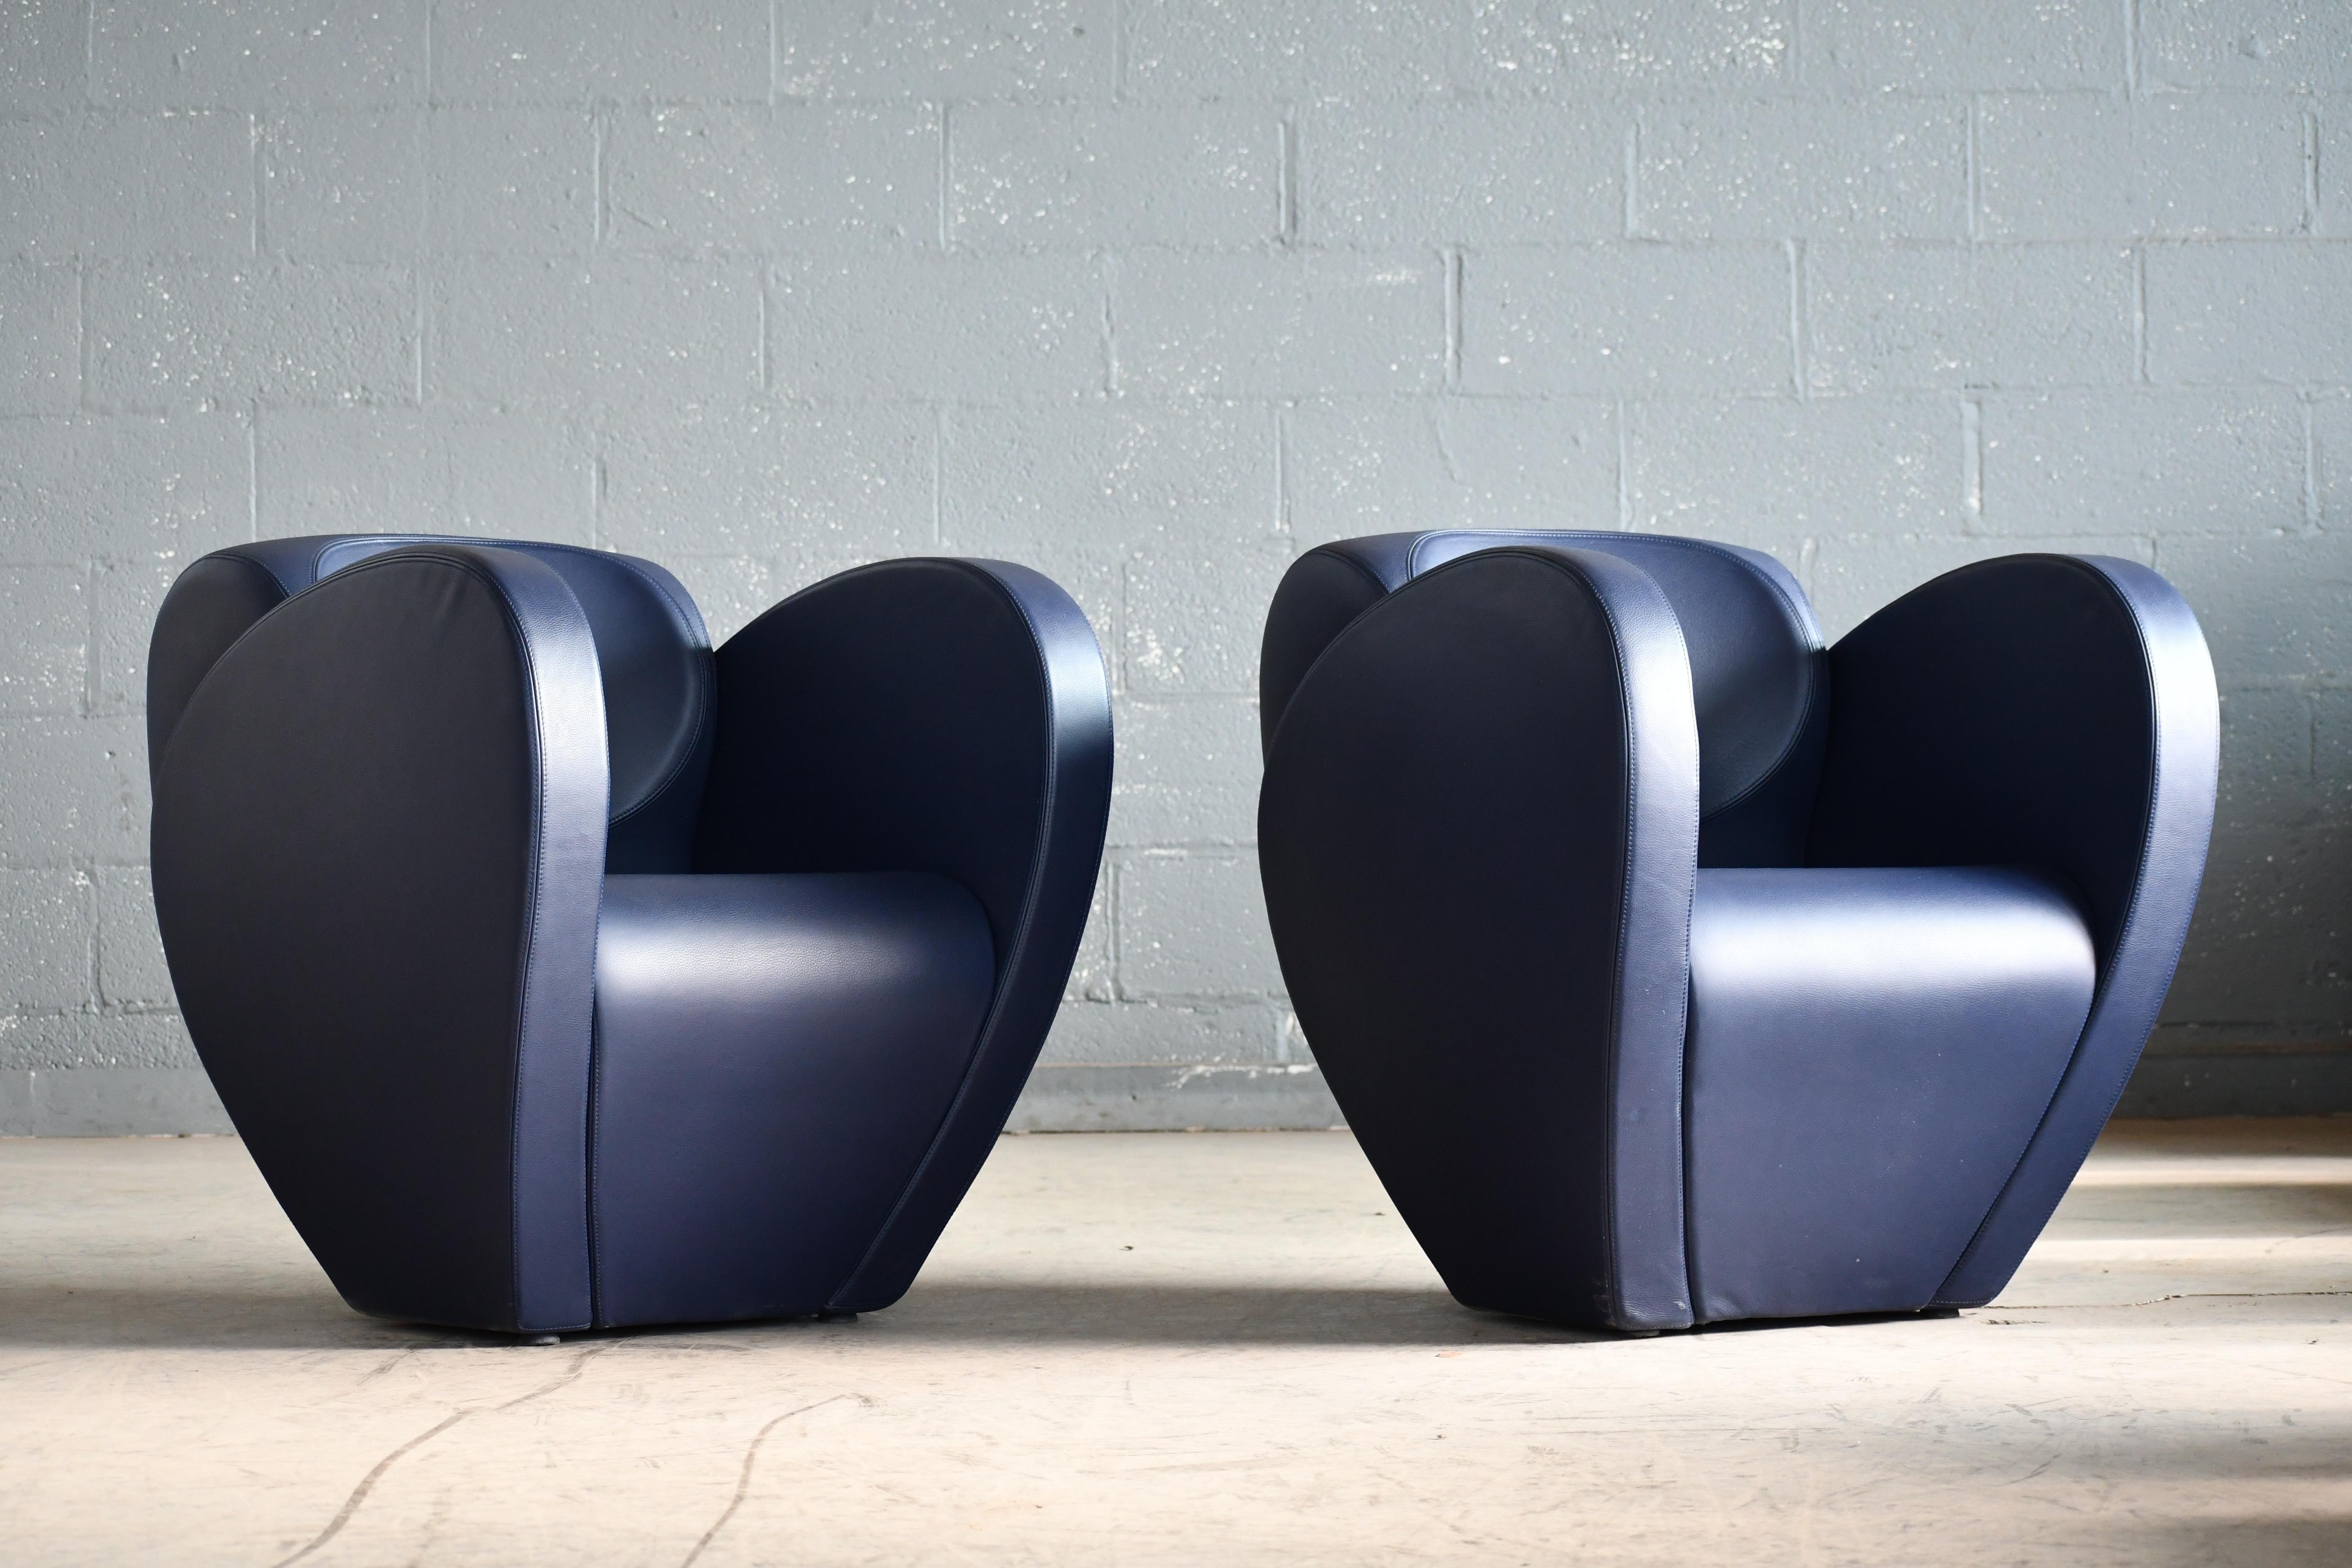 Dieser erstaunliche Sessel aus der Spring Collection wurde 1991 von dem berühmten Ron Arad als Modell 10 für Moroso in Italien entworfen. Das Gestell ist mit Polyurethanschaum gepolstert und mit einem weichen blauen Leder bezogen. Außergewöhnliche